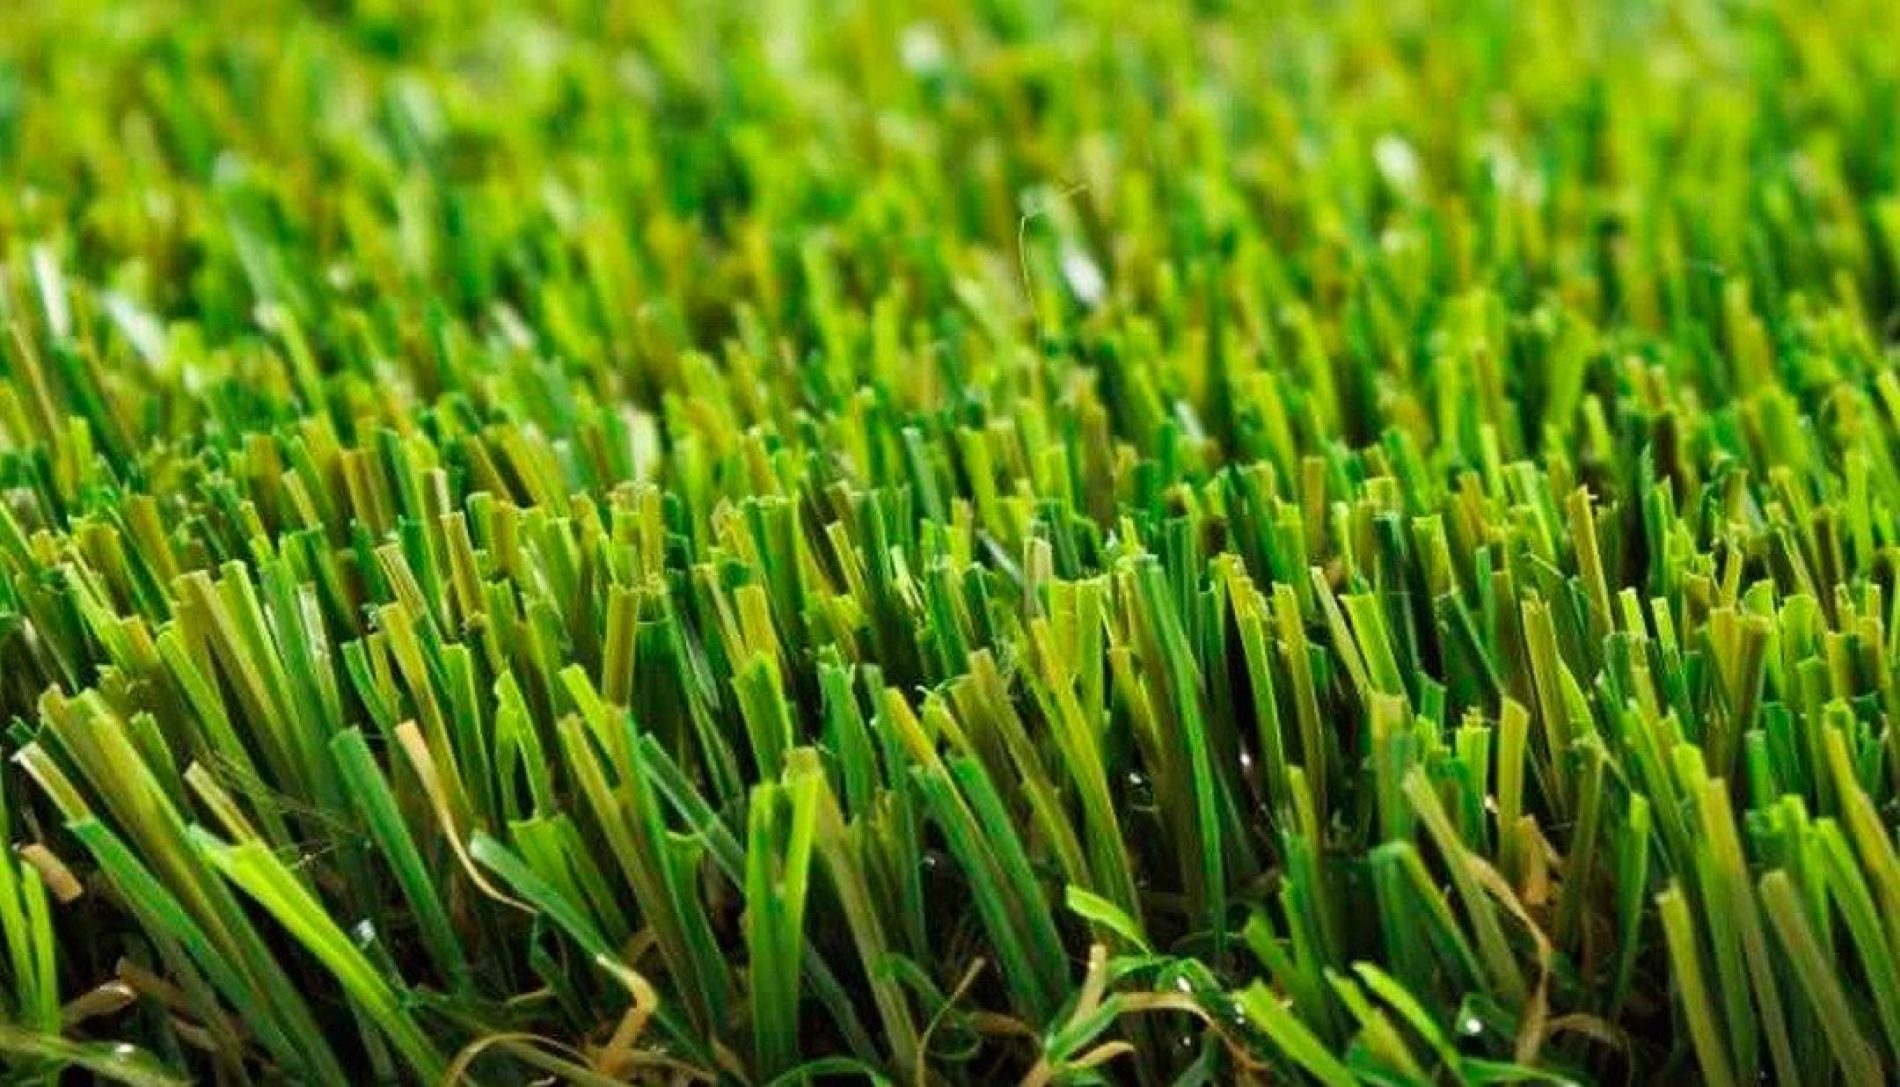 BARRETOS: Furto de tapete de grama em chácara